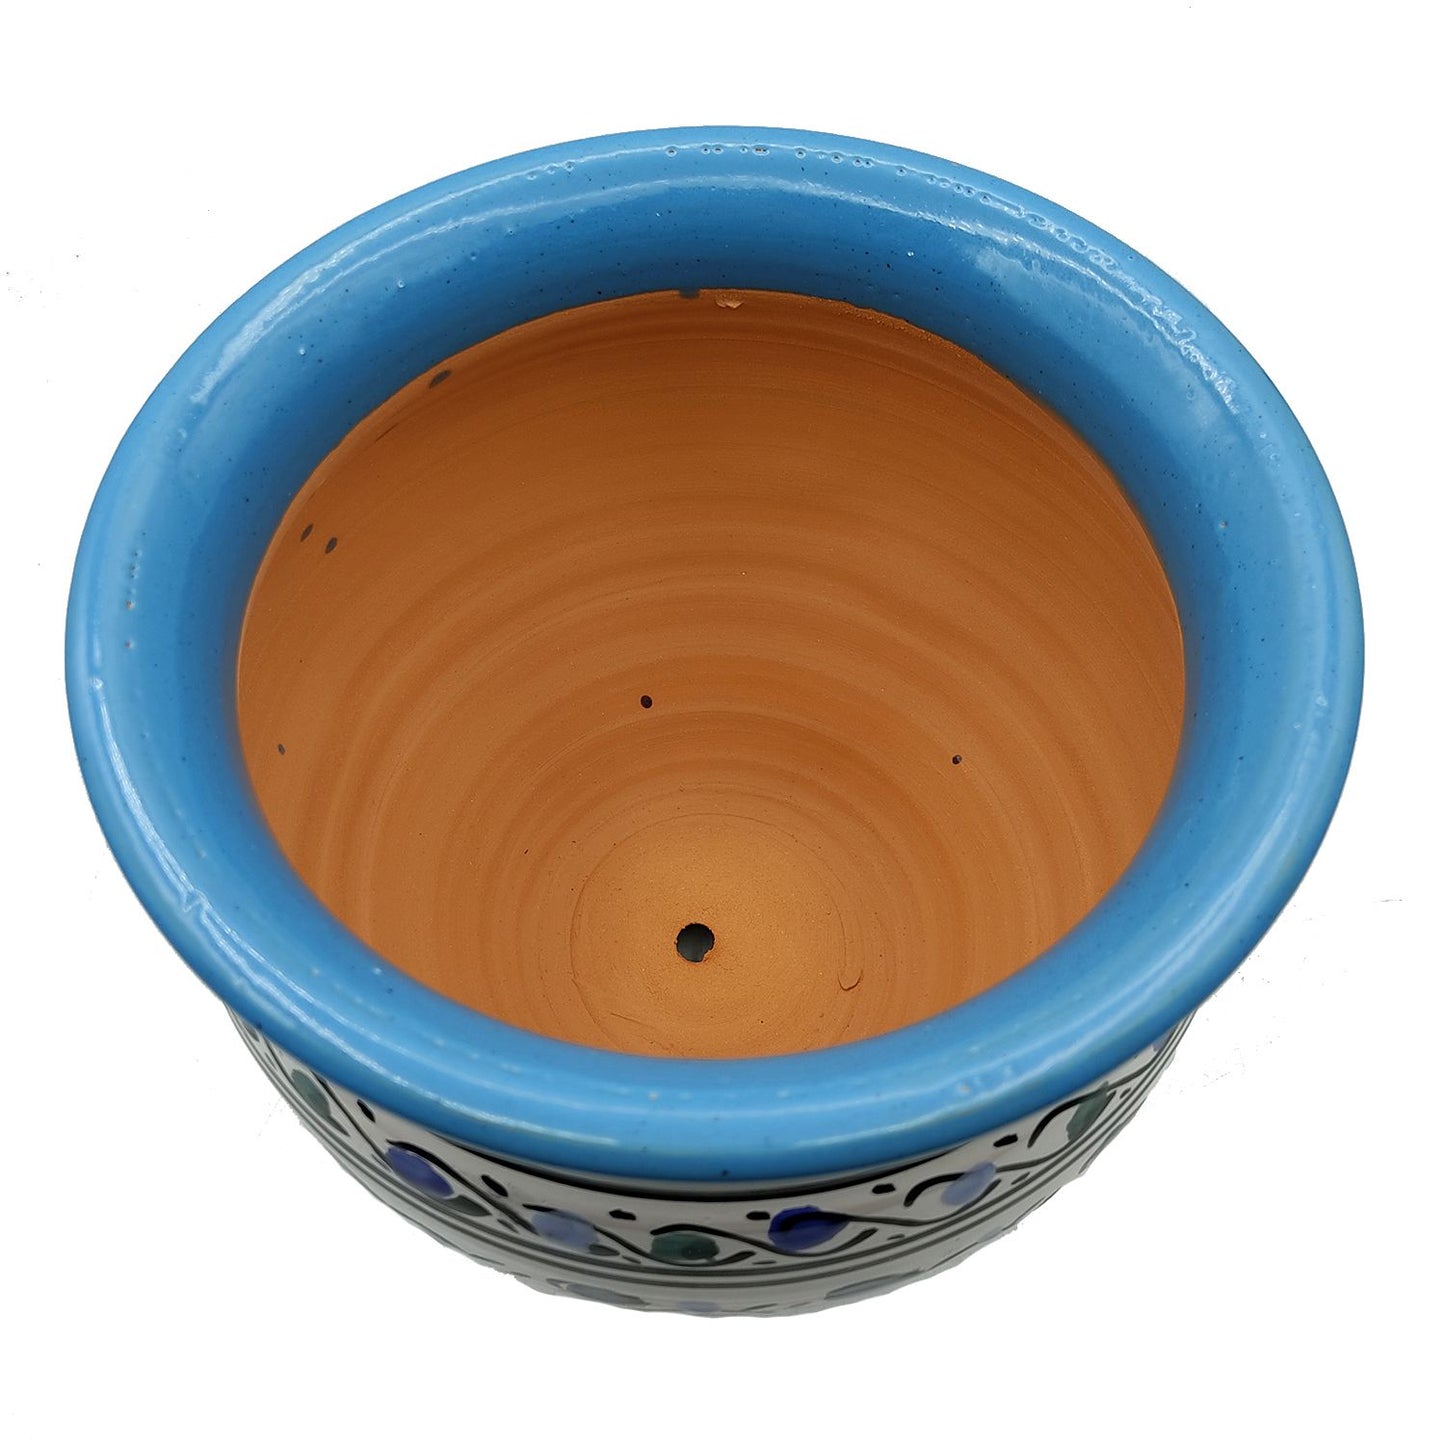 Vaso Cachepot Berbero Etnico Tunisno Marocchino Ceramica Terracotta Orientale 0411221011